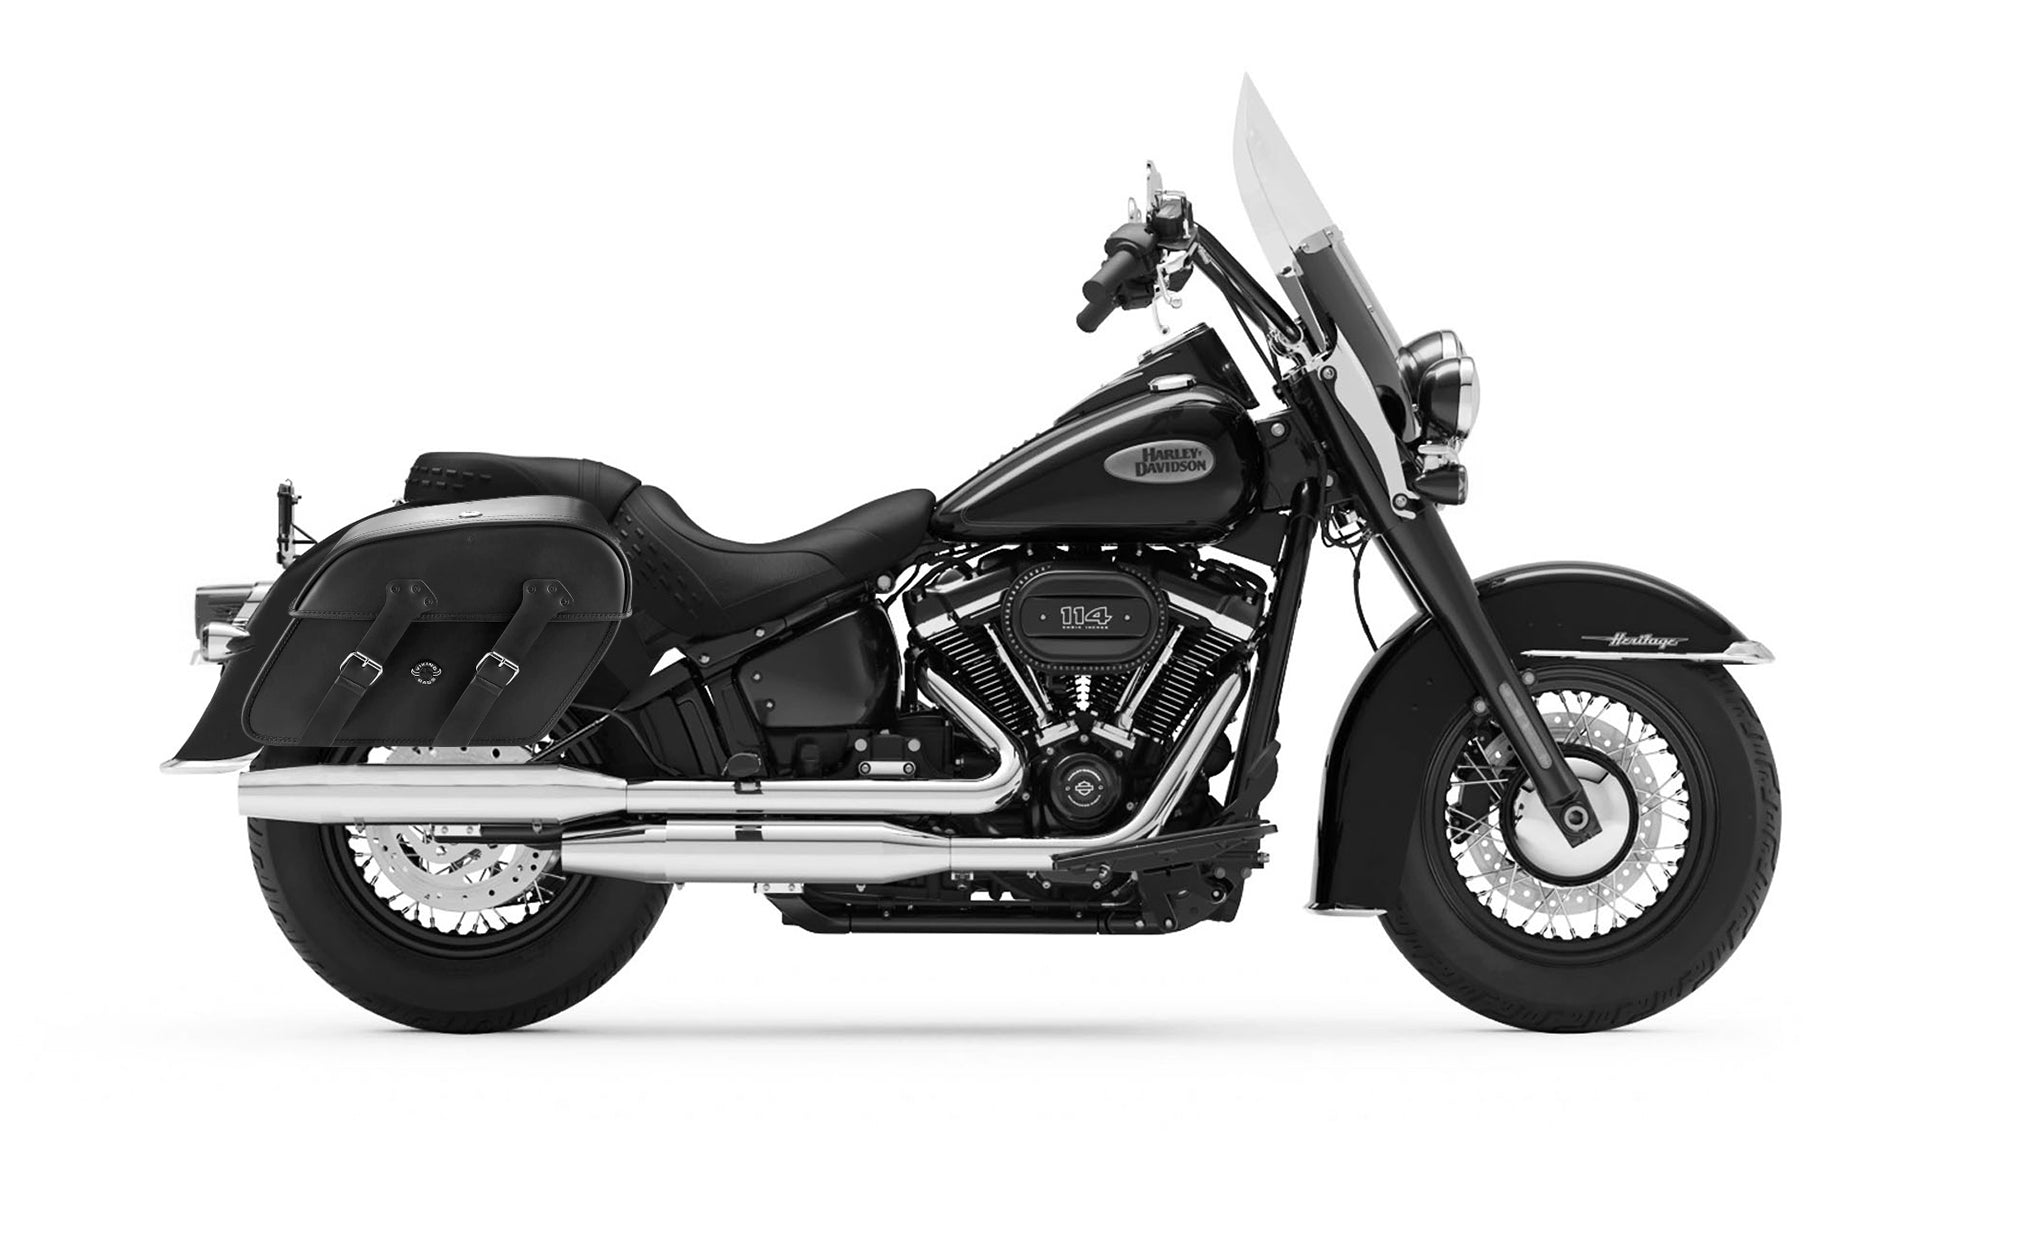 Viking Raven Extra Large Leather Motorcycle Saddlebags For Harley Softail Heritage Flst I C Ci on Bike Photo @expand